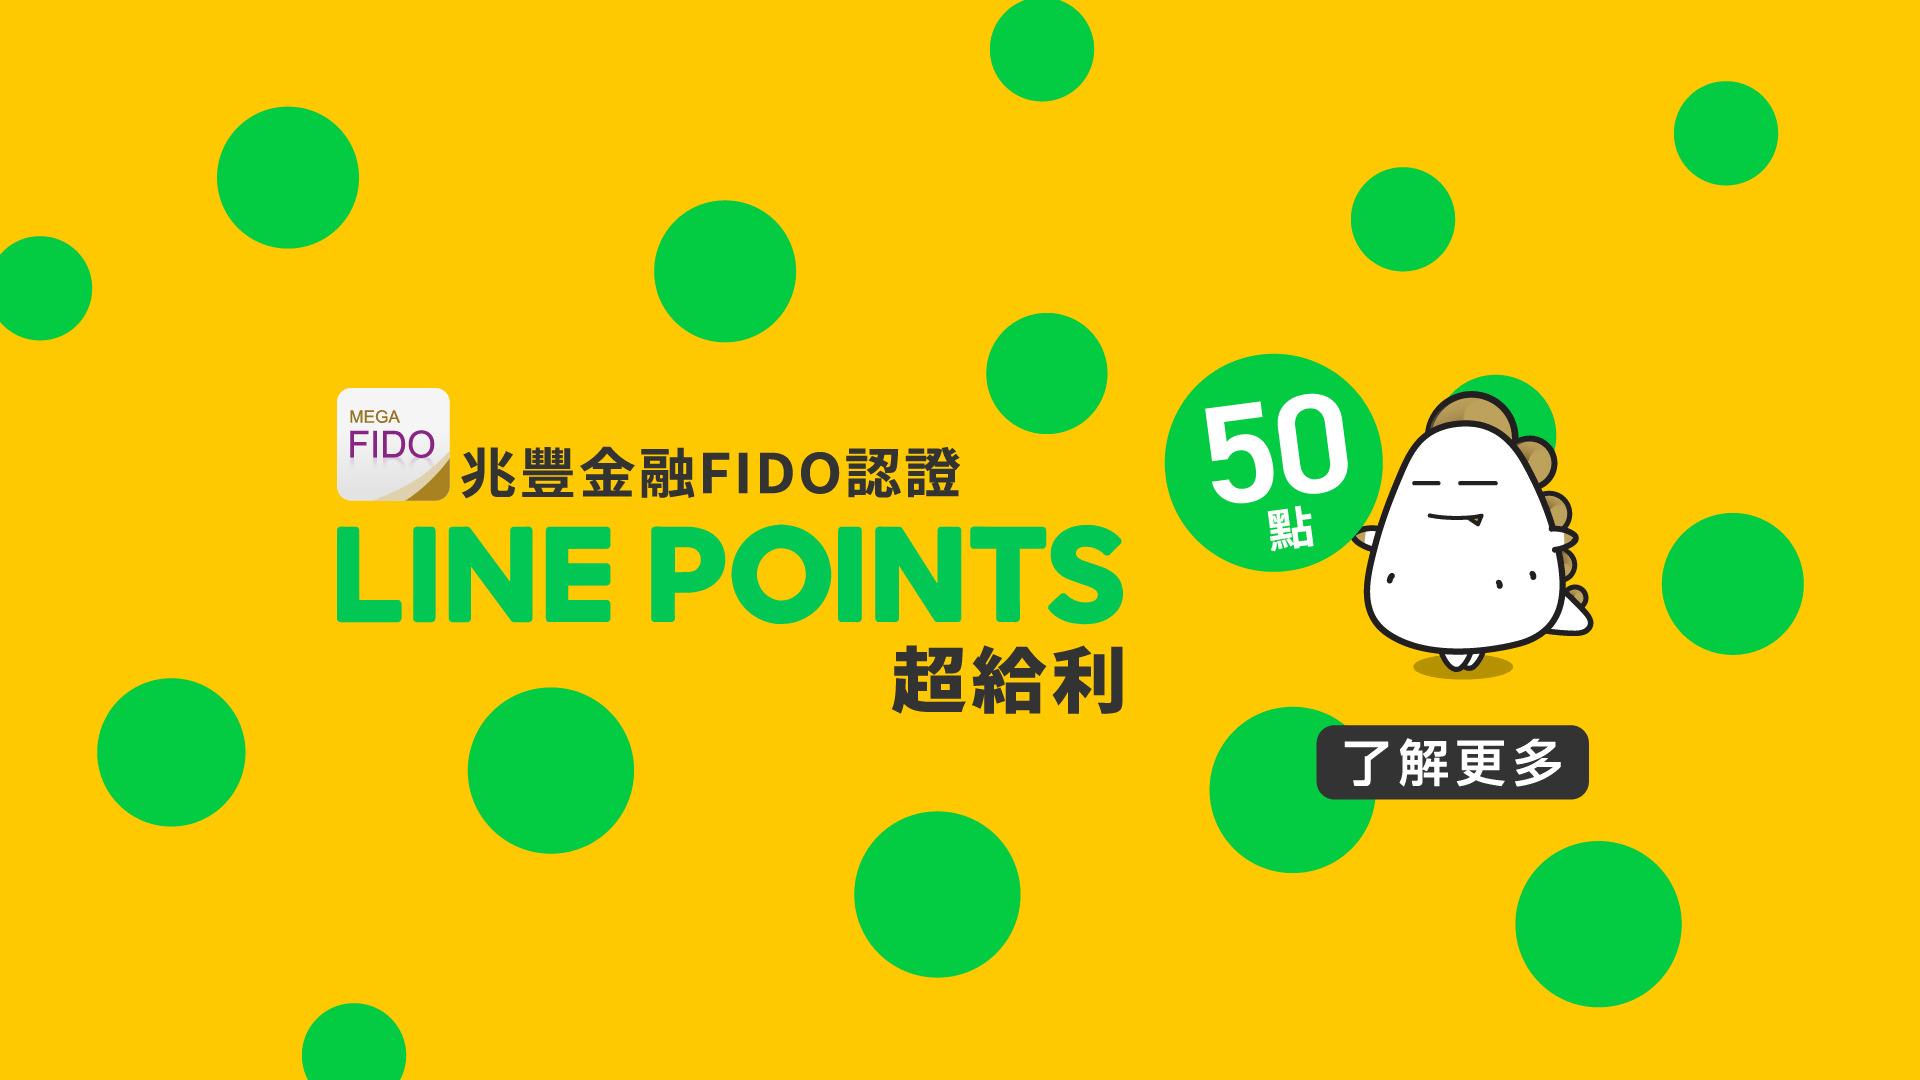 「兆豐金融FIDO認證 LINE POINTS 50點超給利」活動公告BANNER